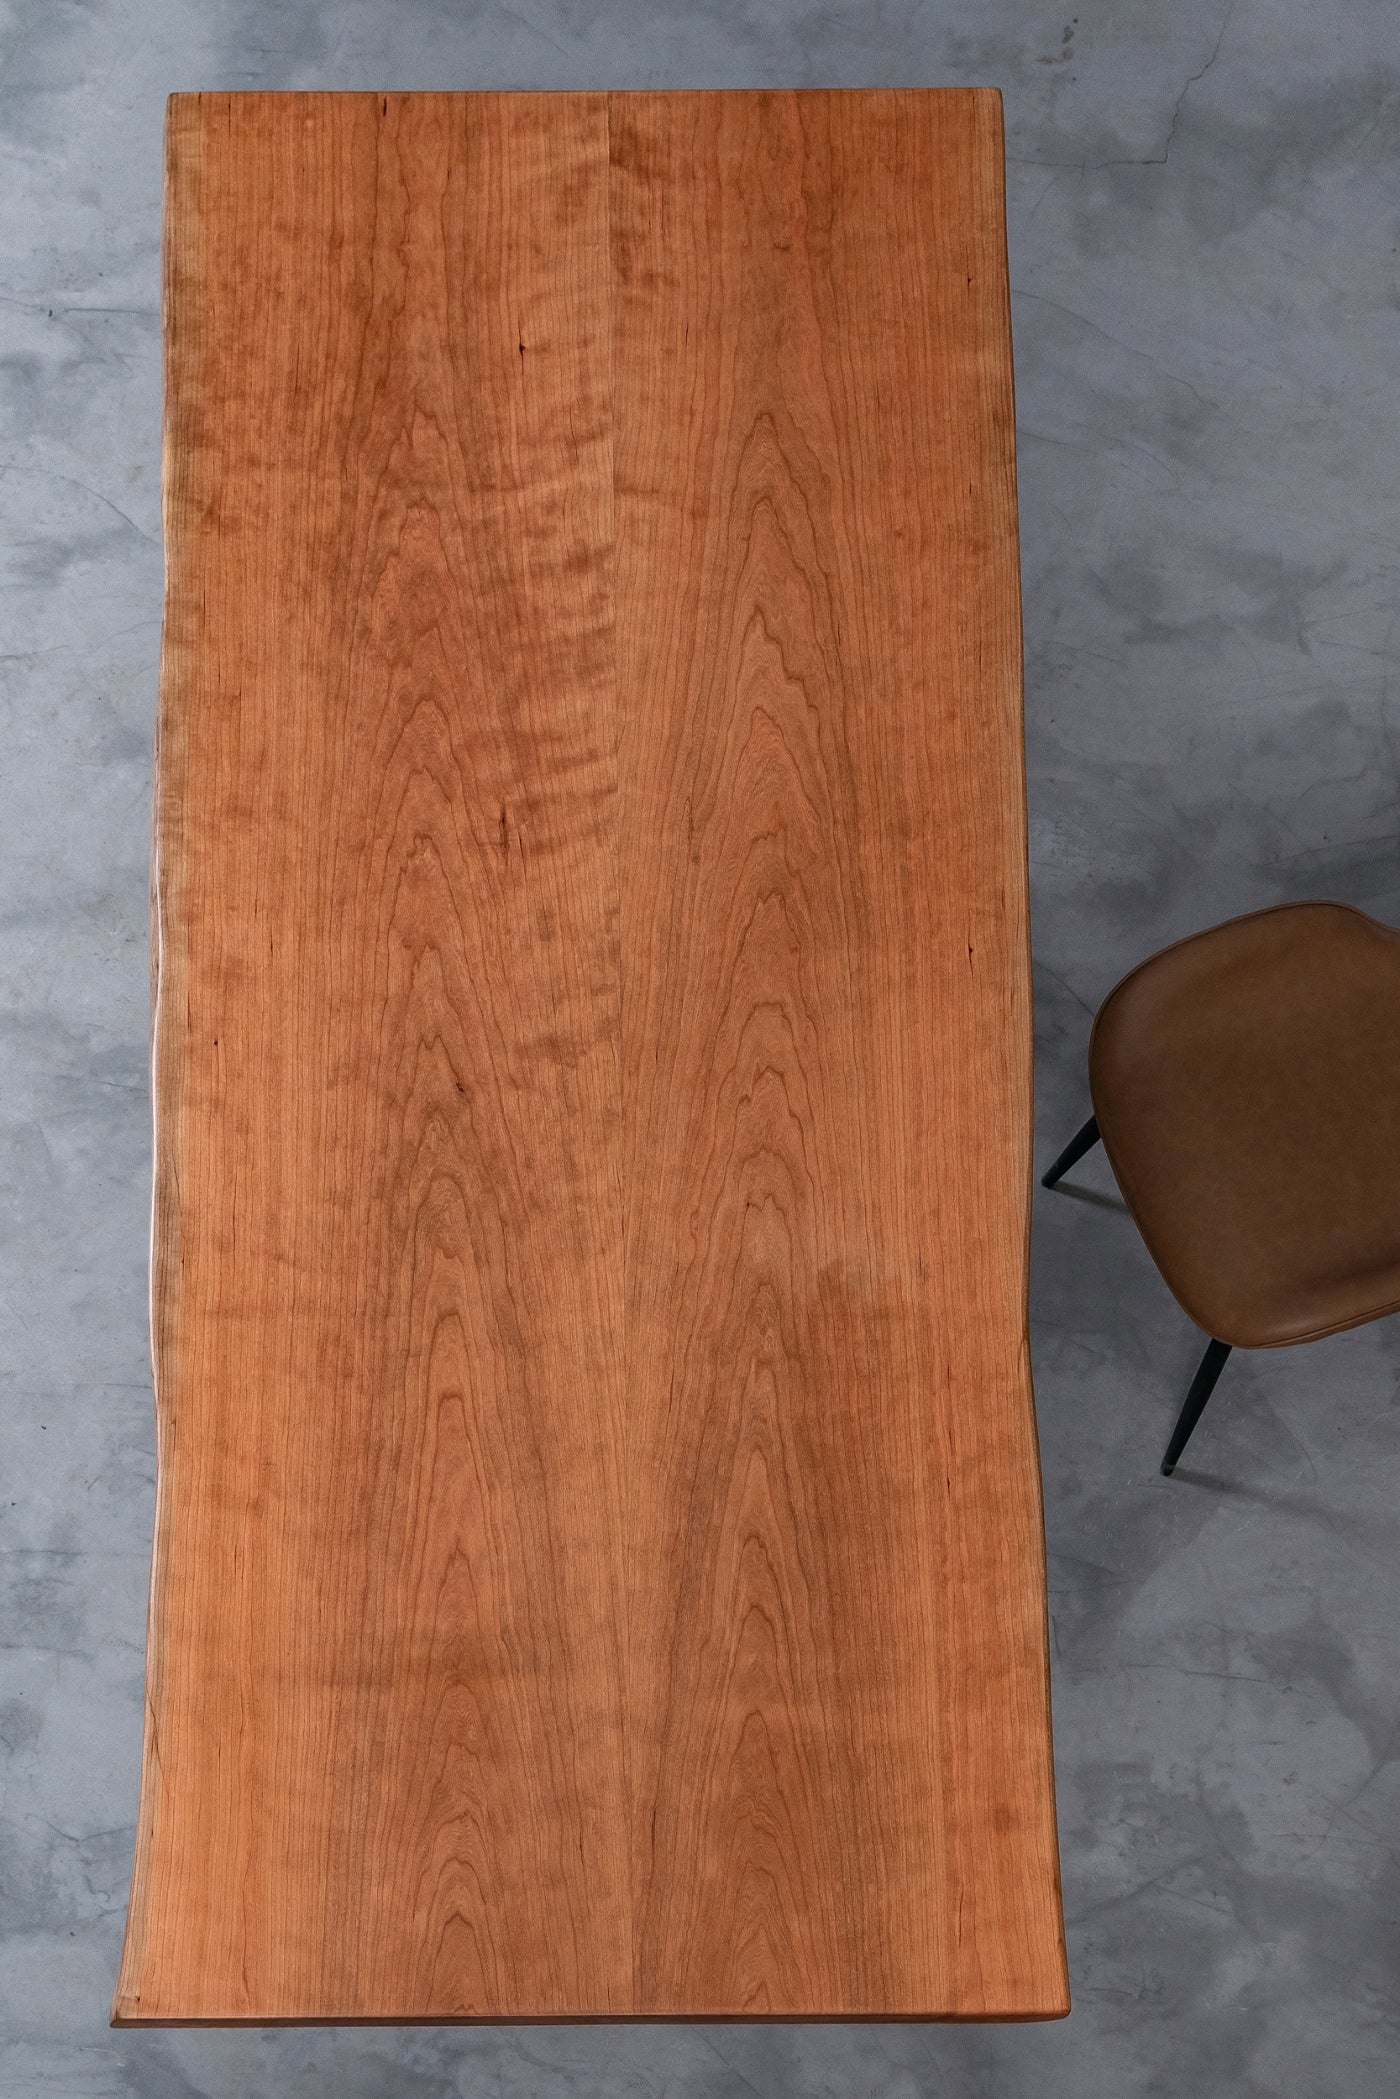 Tavolo con lastra in legno di ciliegio Live Edge unico fatto a mano, piano in lastra di granito